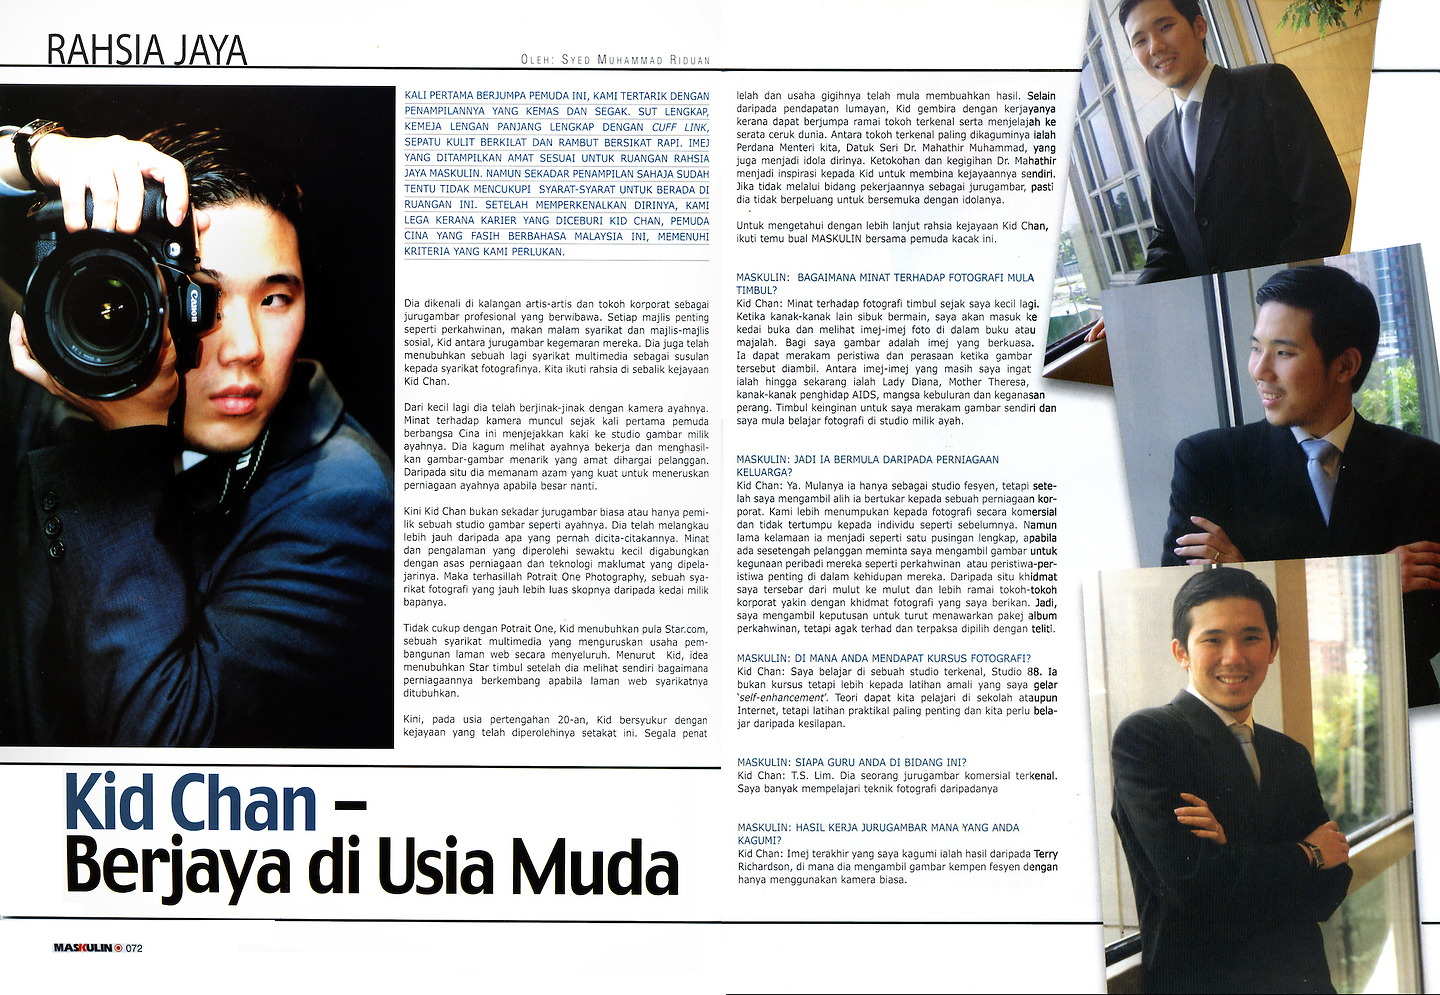 Maskulin January Vol. 16: 'Kid Chan - Berjaya di Usia Muda'